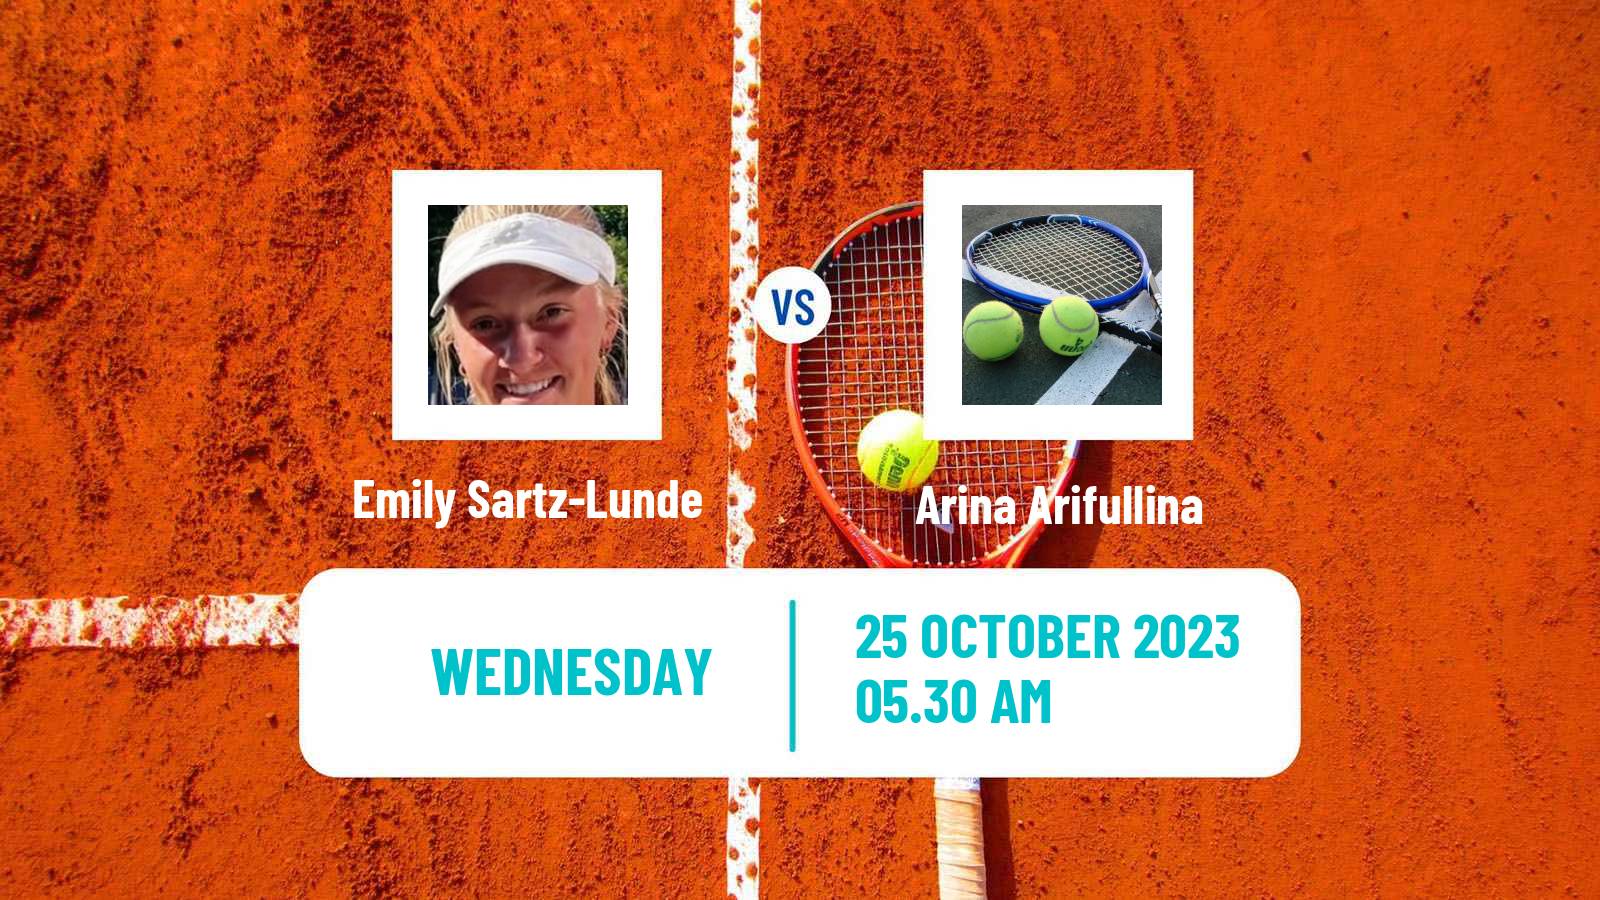 Tennis ITF W15 Villena Women Emily Sartz-Lunde - Arina Arifullina